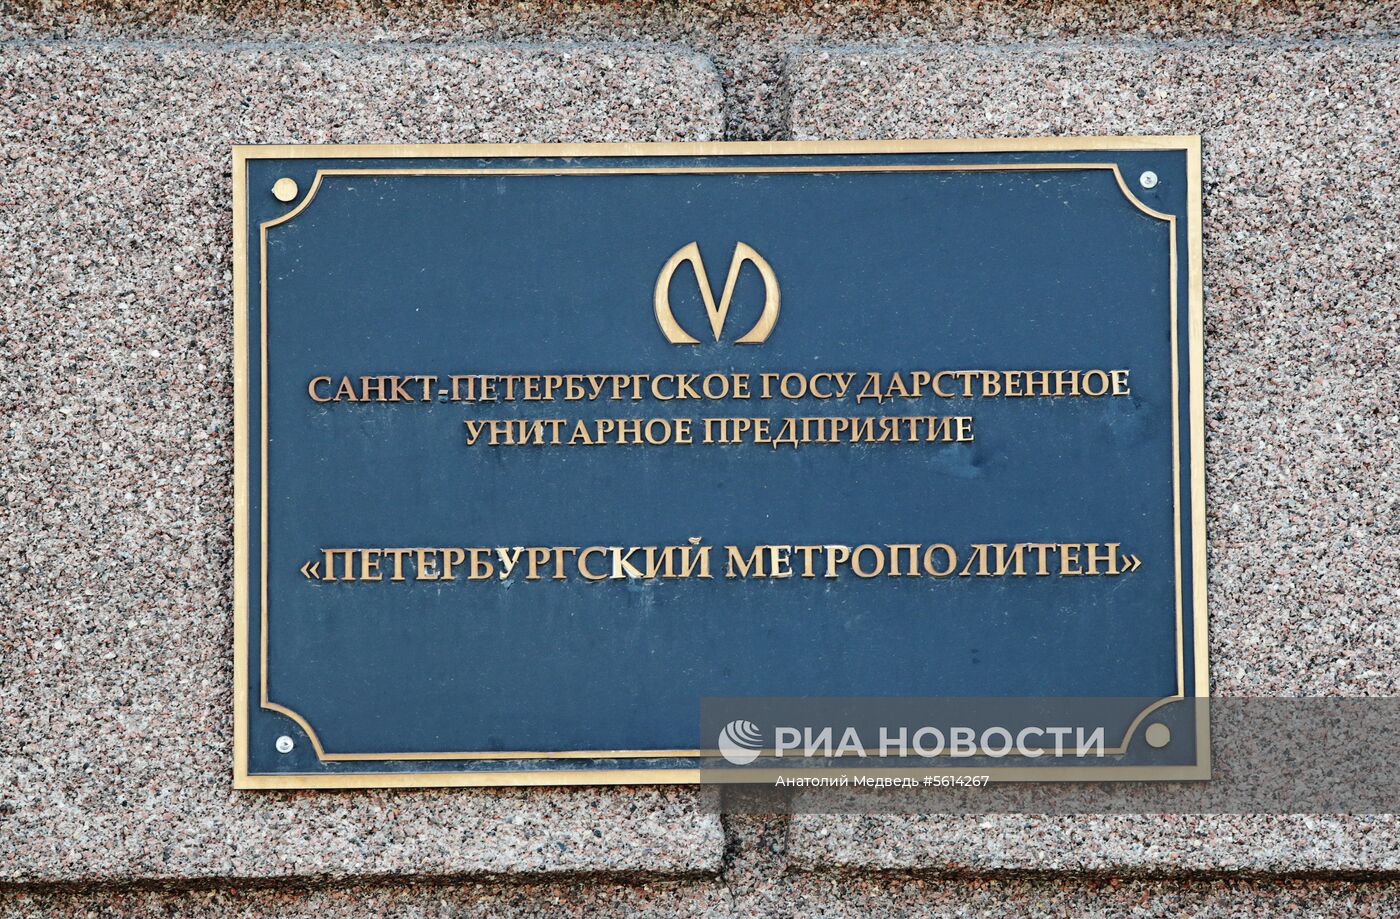 ФСБ проводит обыск в метрополитене Санкт-Петербурга